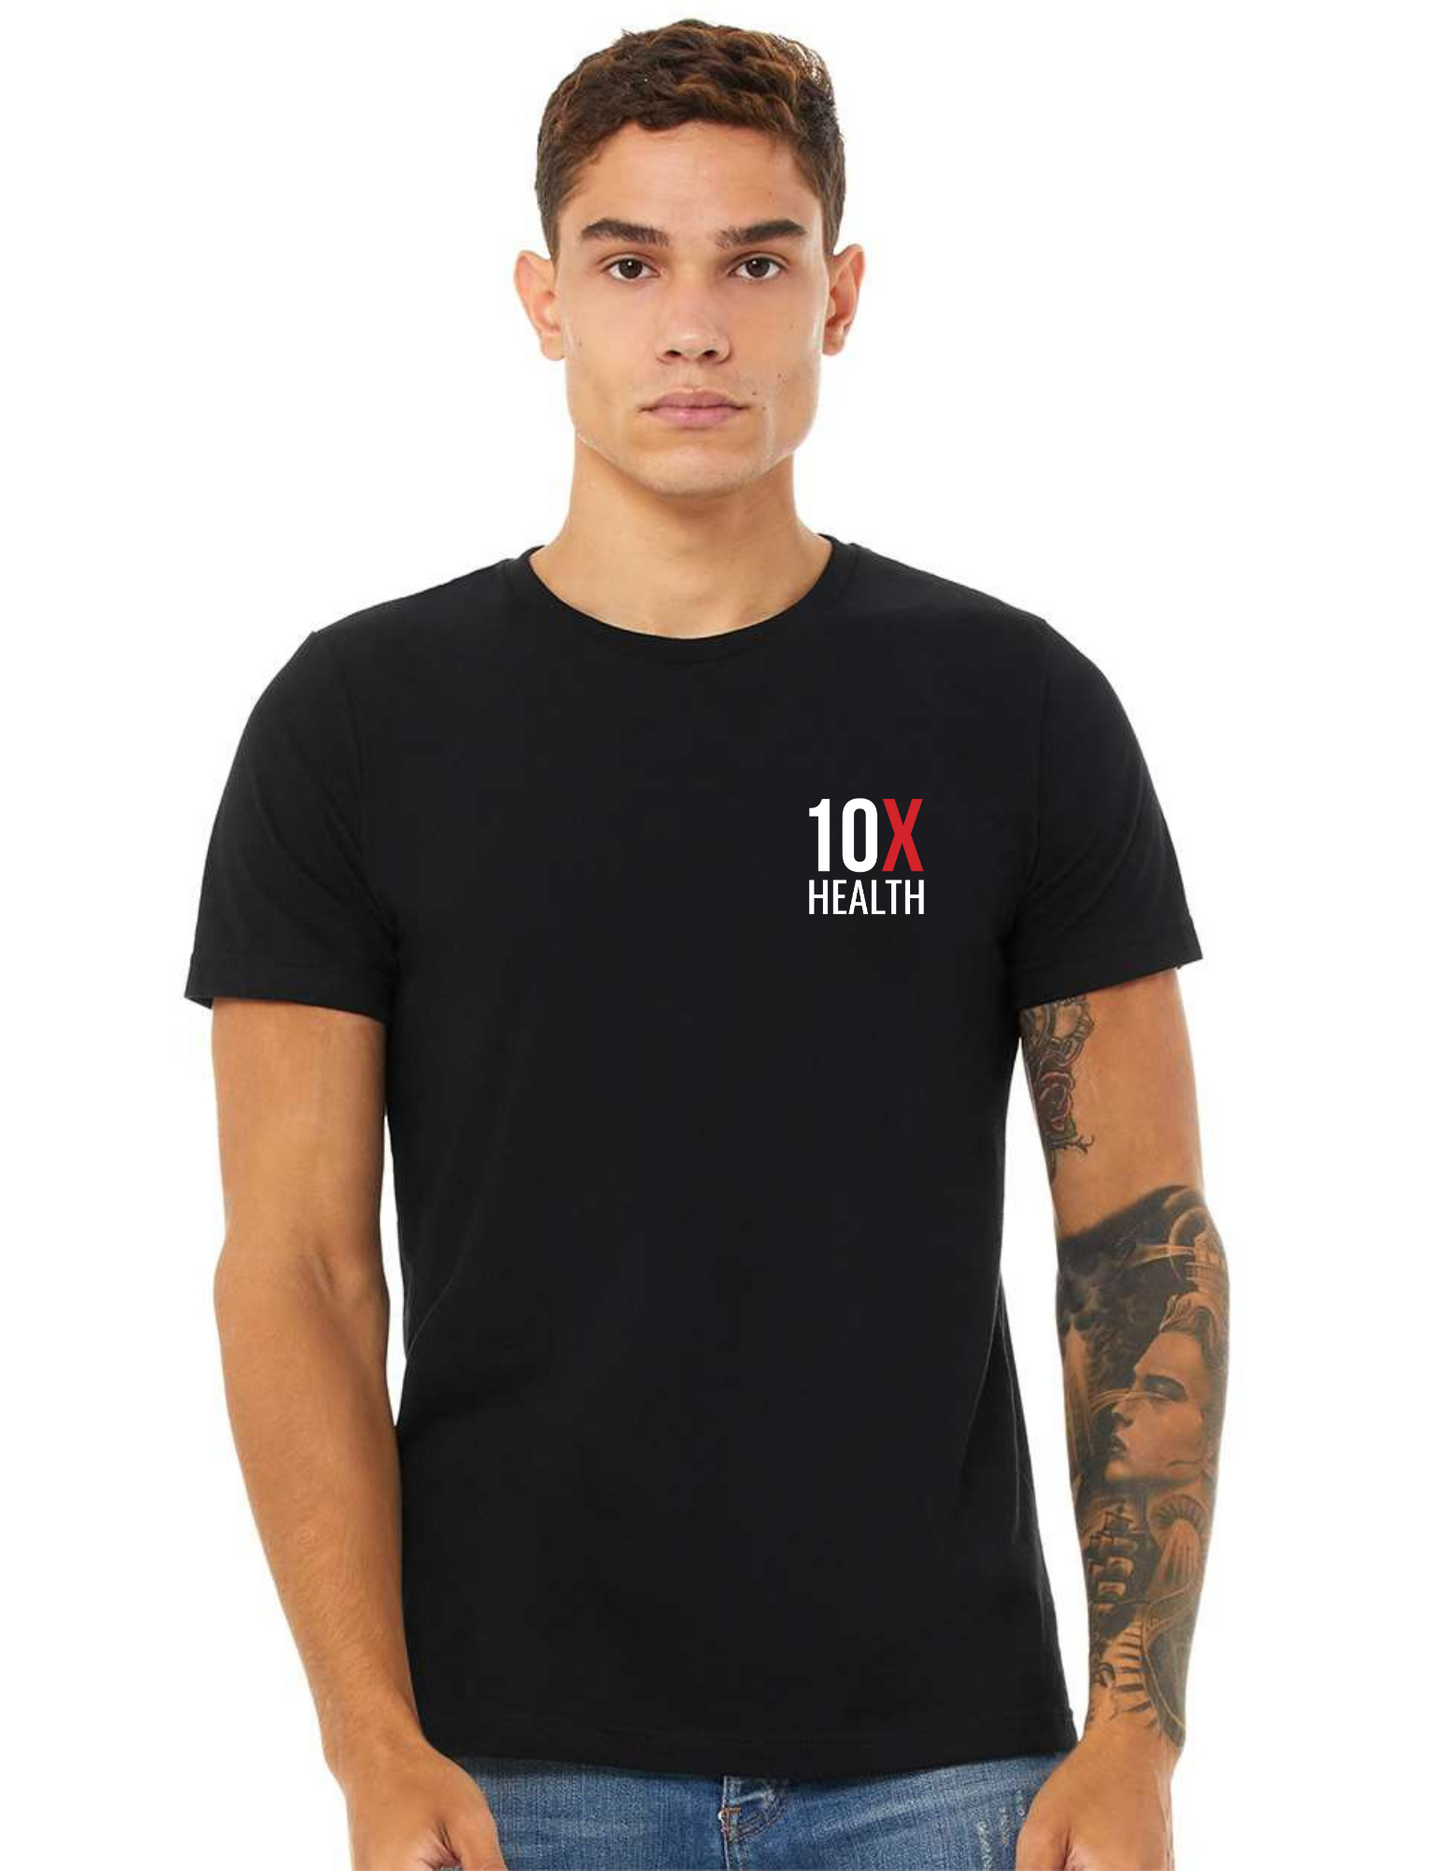 10X Health T-Shirt